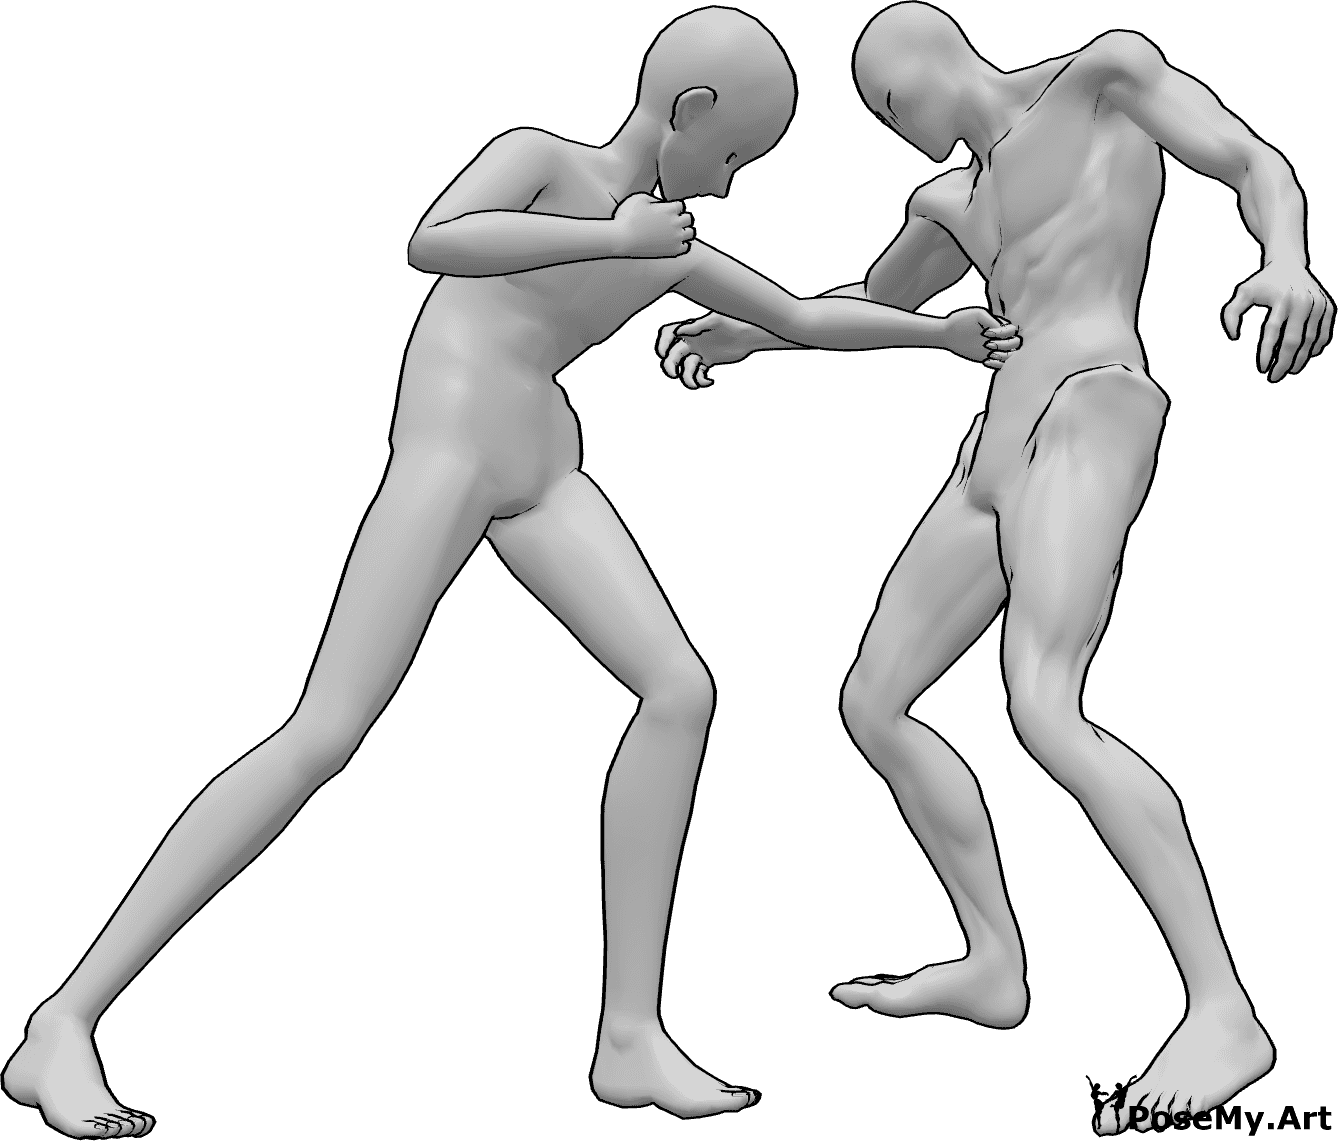 Posen-Referenz- Anime Magen Punch Pose - Anime-Männchen schlägt dem Feind mit der linken Hand in den Magen